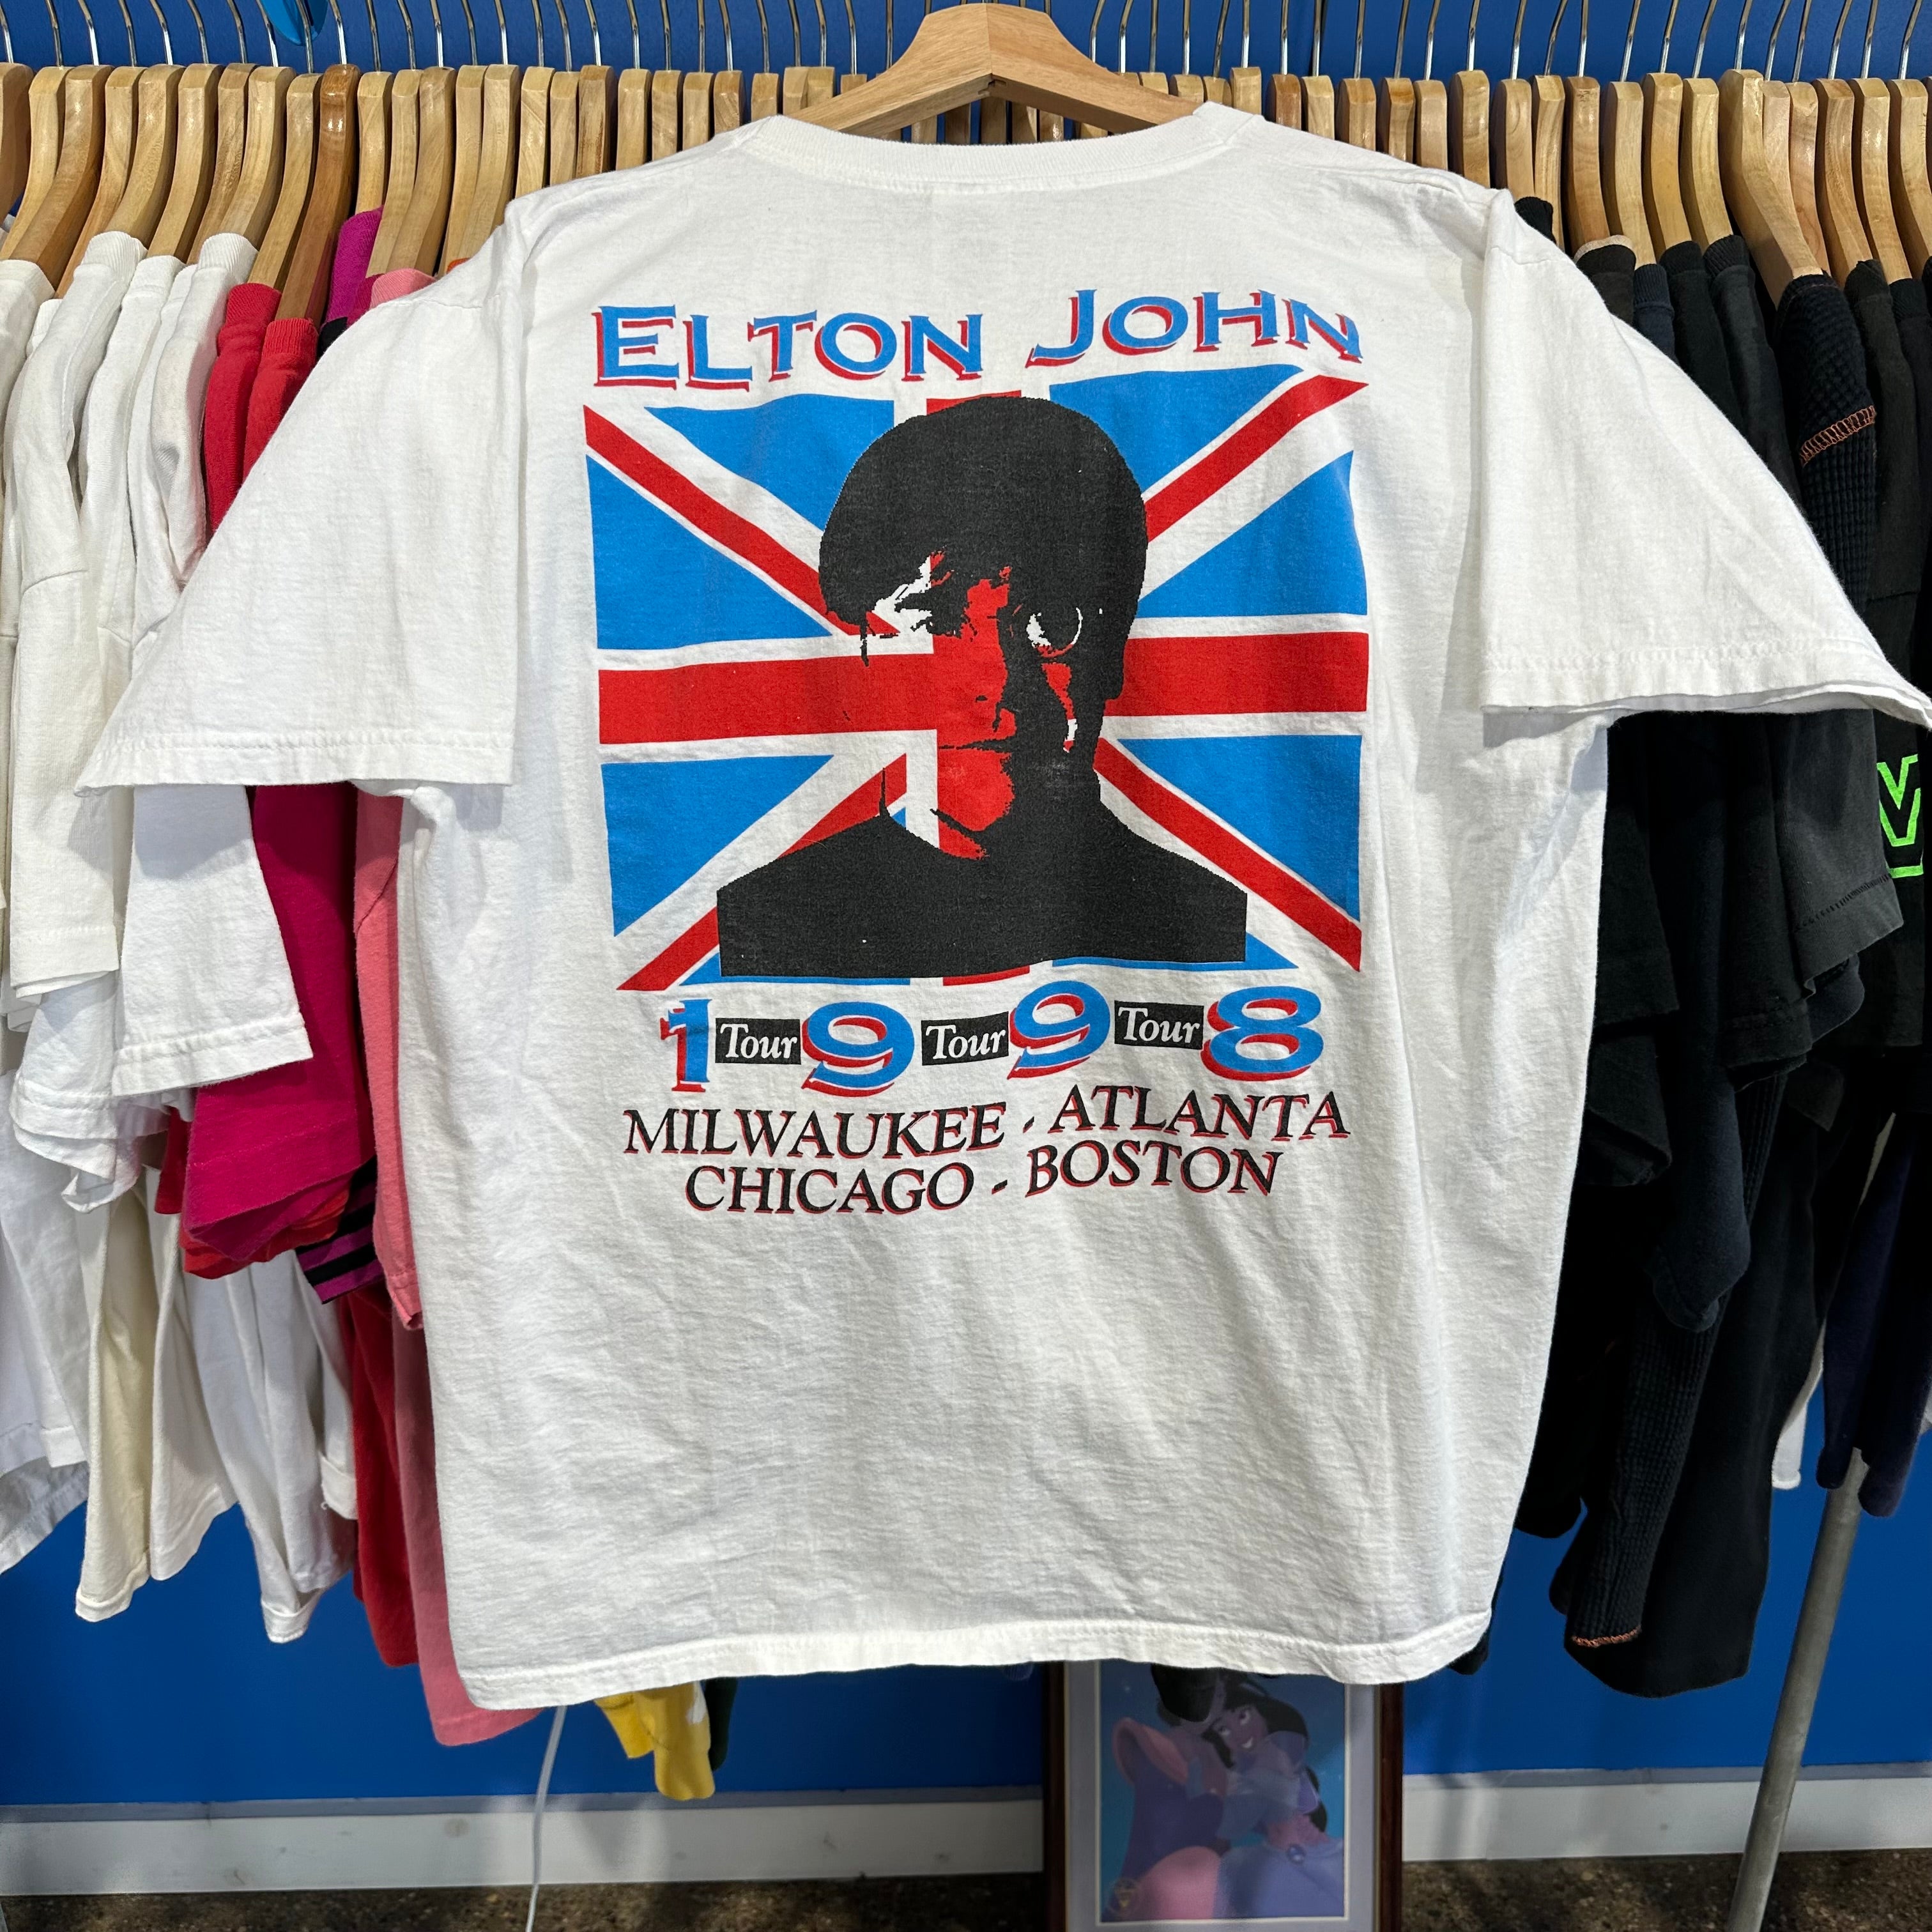 Elton John “The Big Picture” 1998 Tour T-Shirt